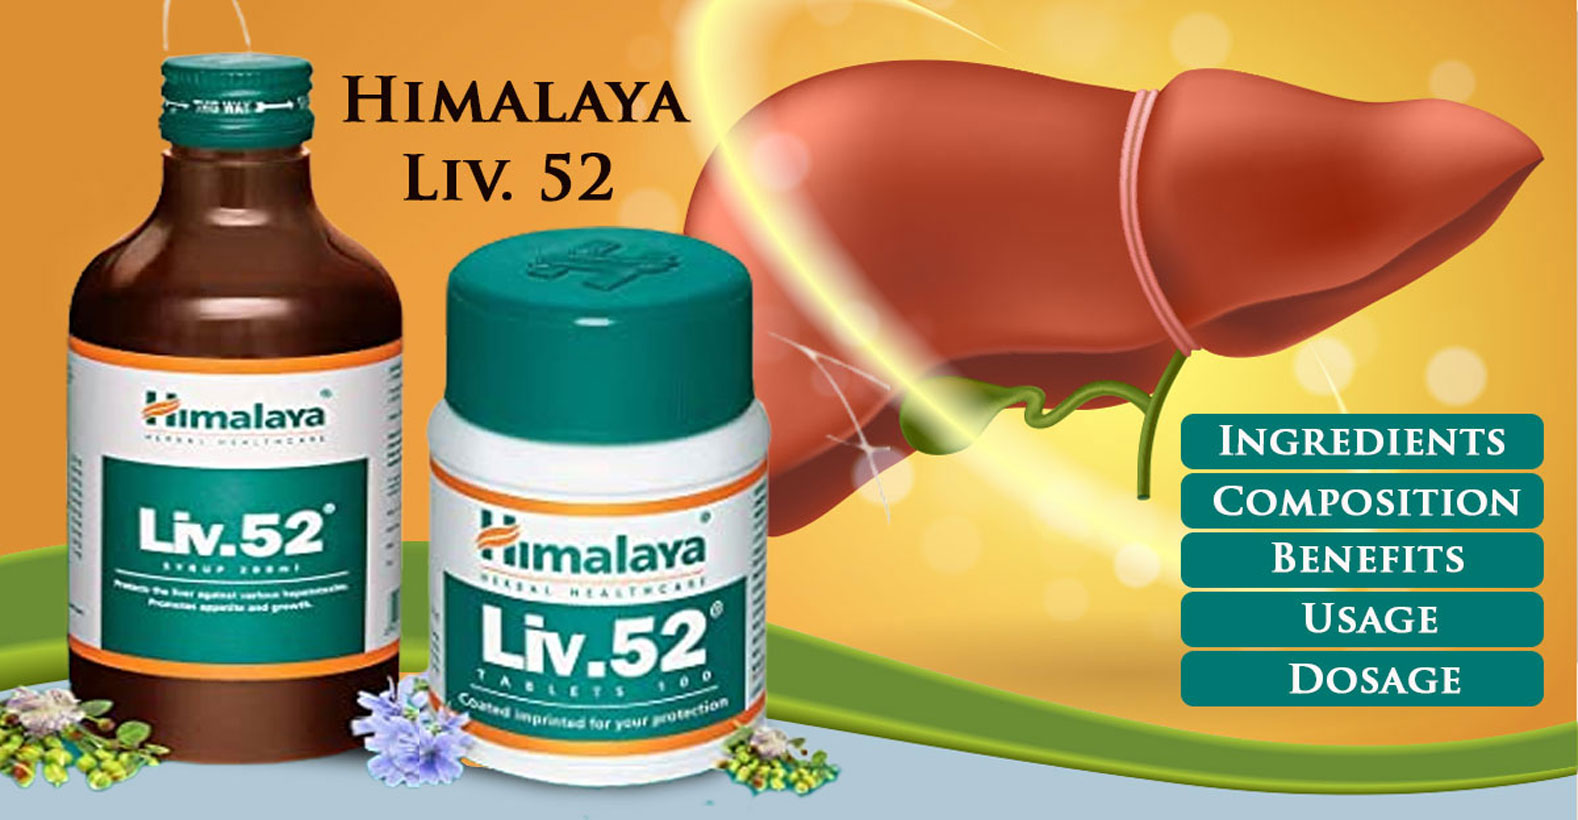 Himalaya Liv.52 Drops - Promotes Appetite & Growth – Himalaya